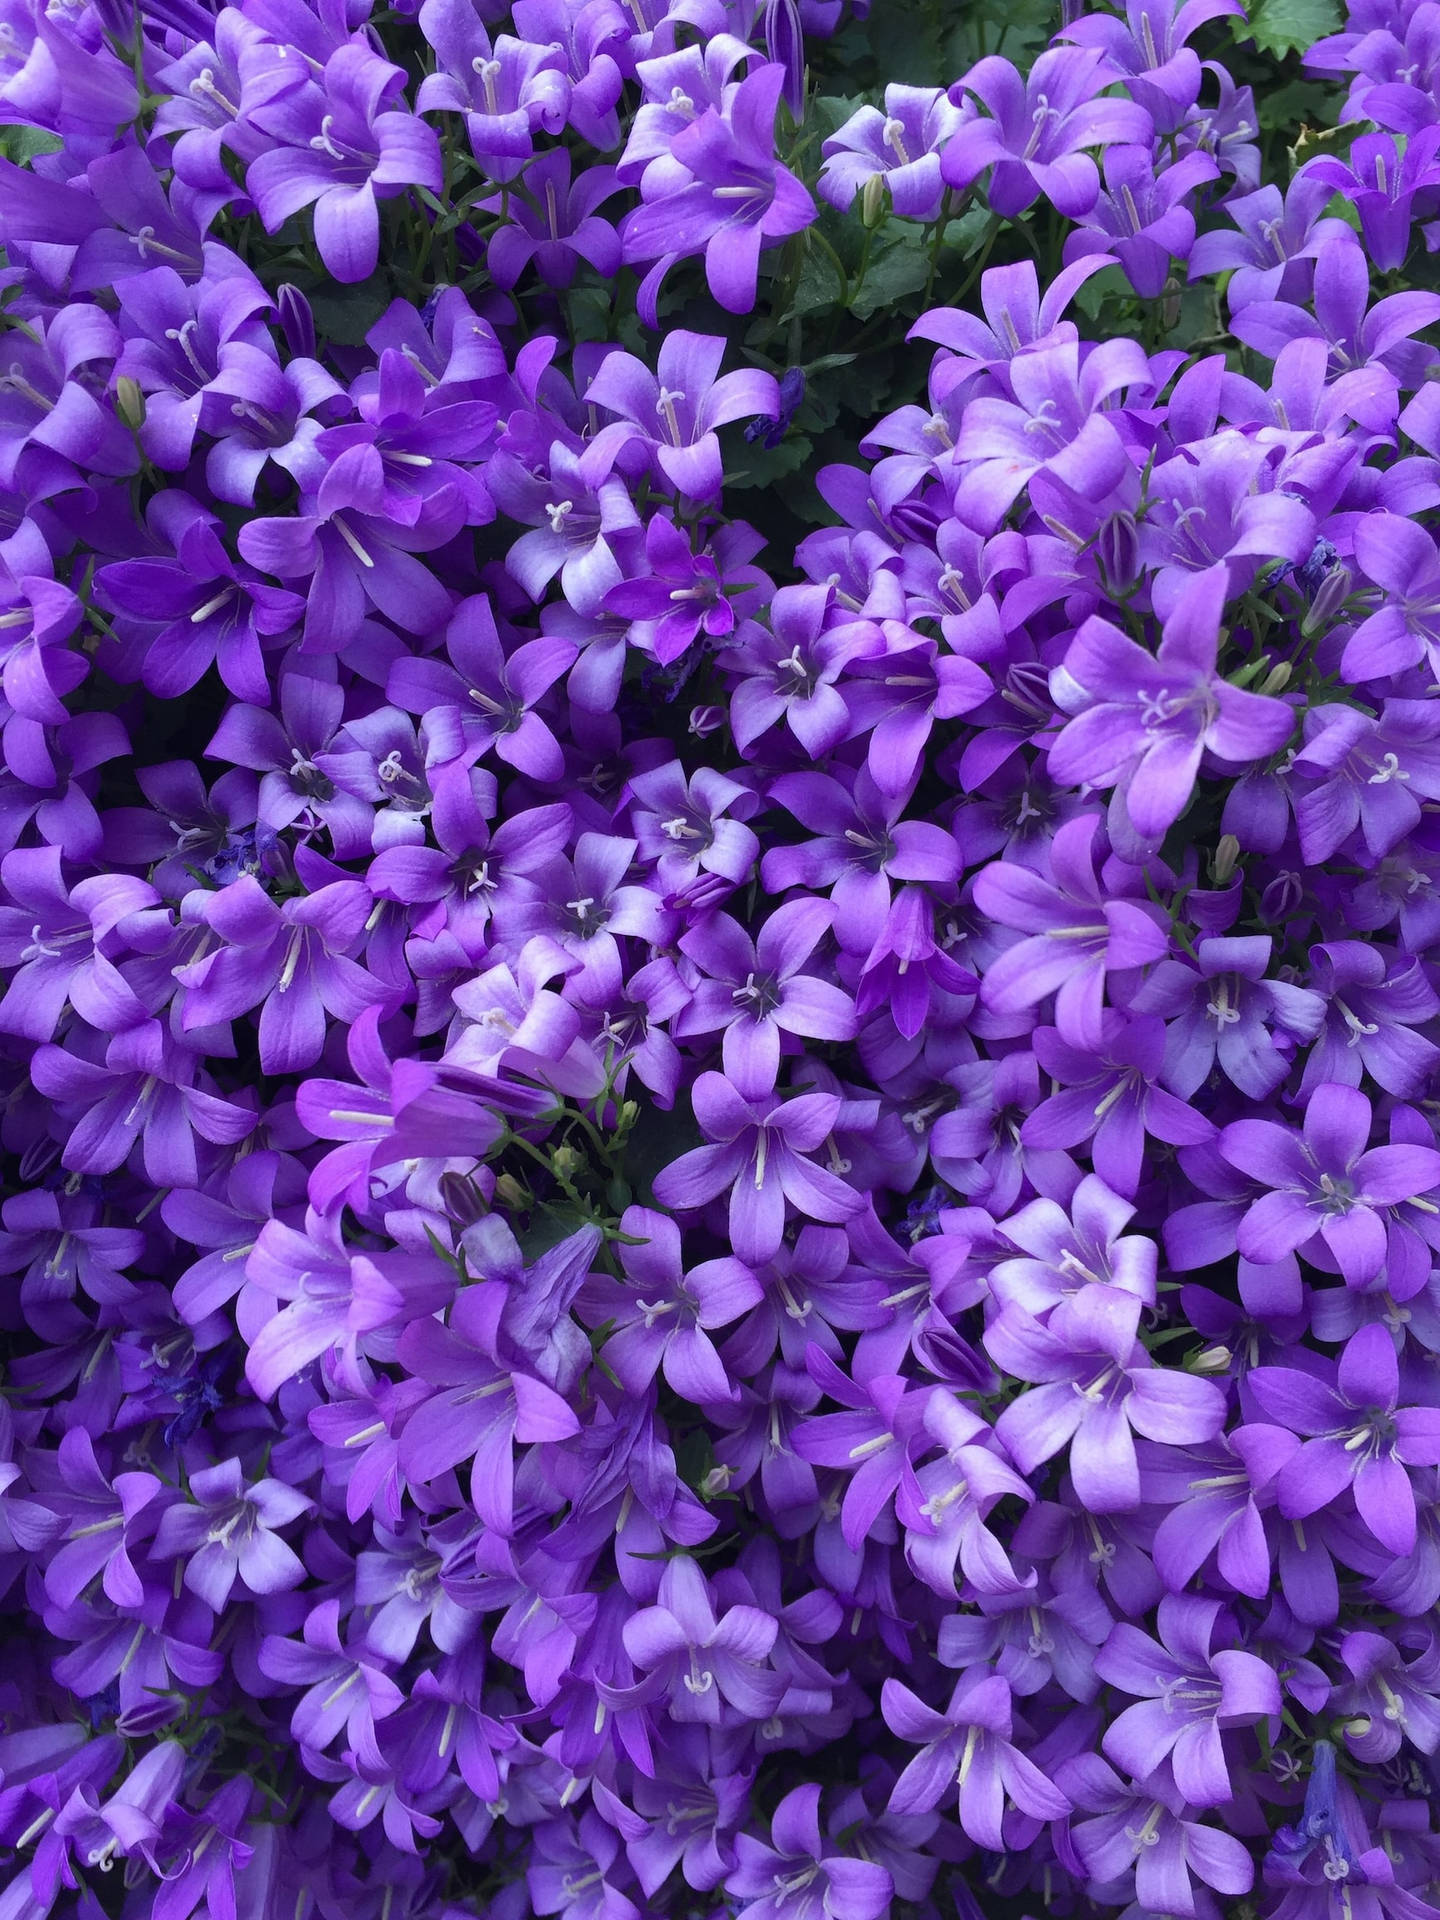 Growing And Blooming Purple Bellflowers Iphone Wallpaper